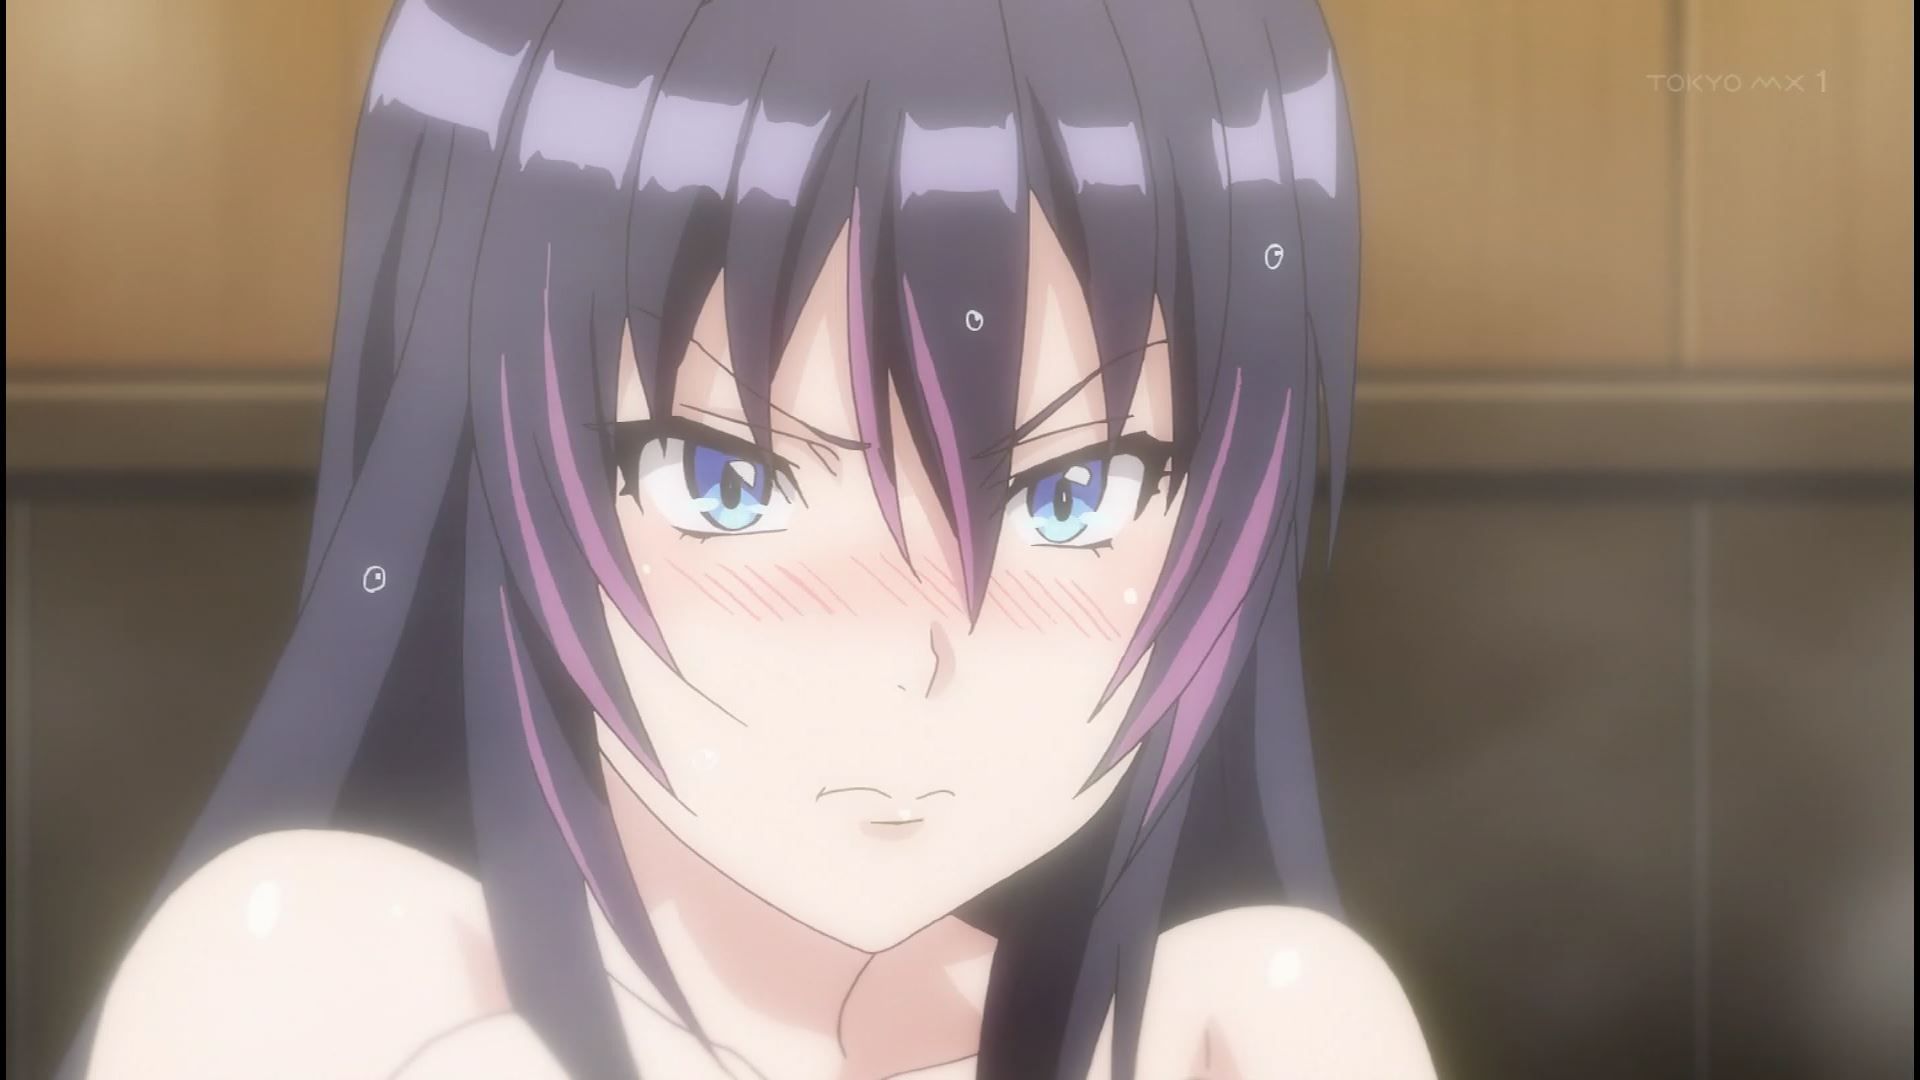 Anime [Kandagawa JETGIRLS] 8 episodes of girls erotic round-view bath bathing scene! 27